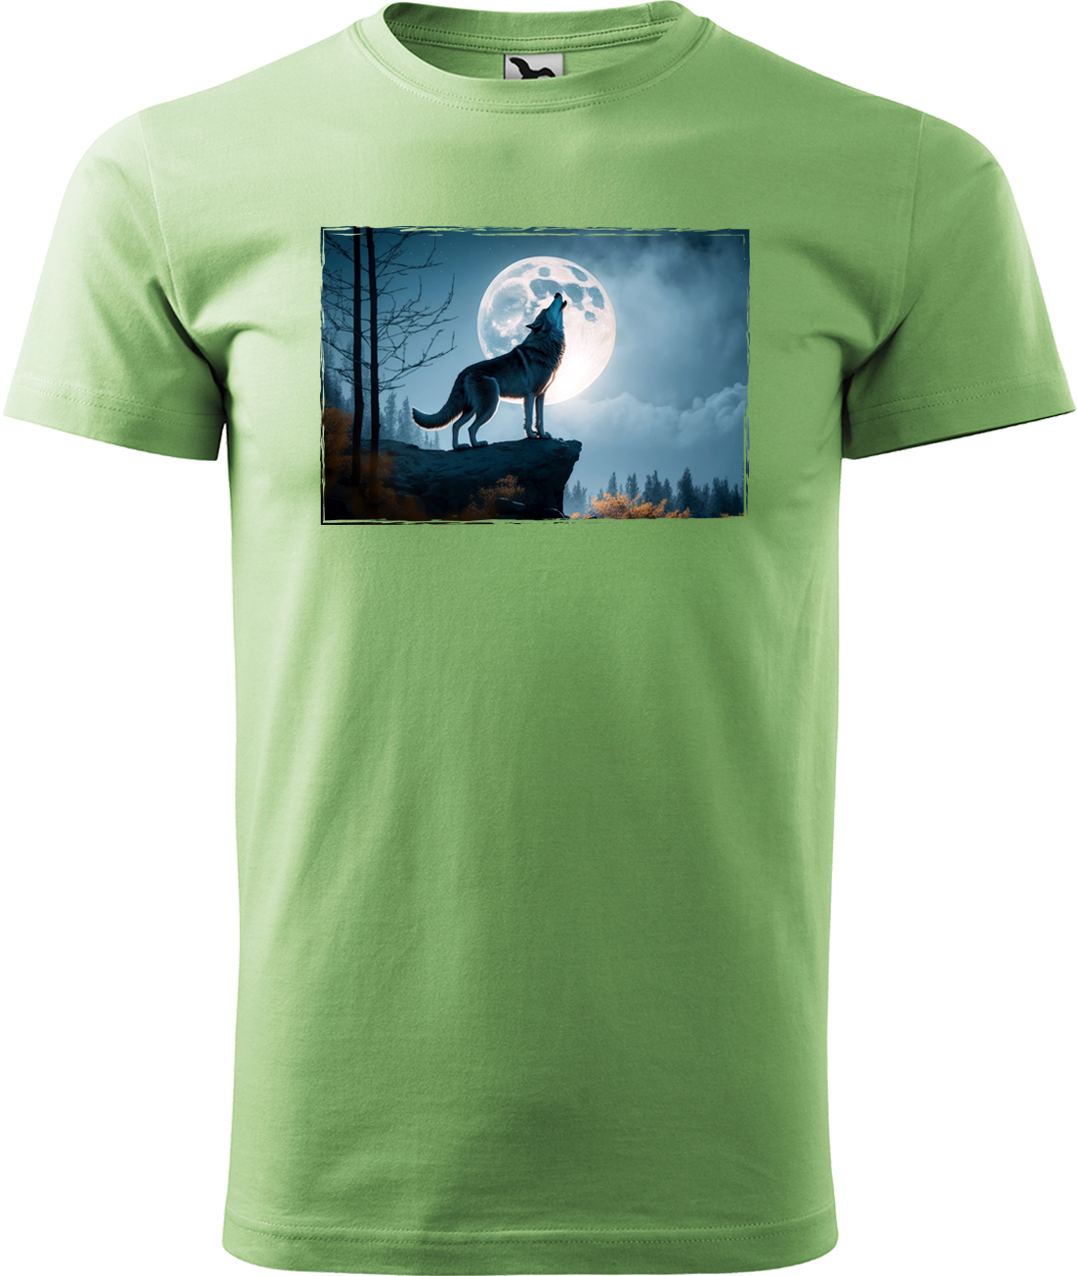 Pánské tričko s vlkem - Vyjící vlk Velikost: S, Barva: Trávově zelená (39)